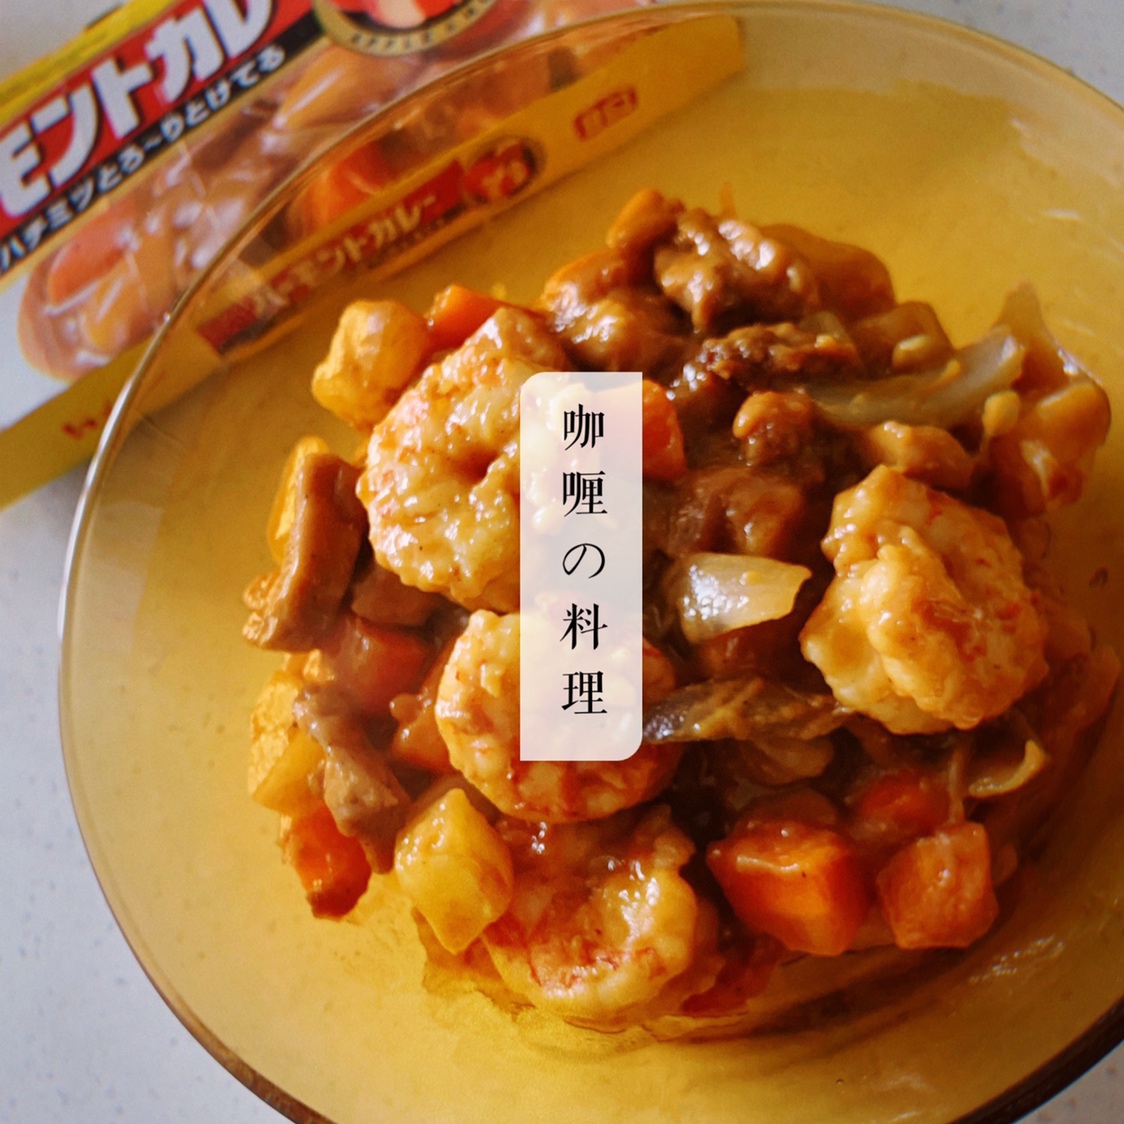 加了椰浆的日式咖喱虾